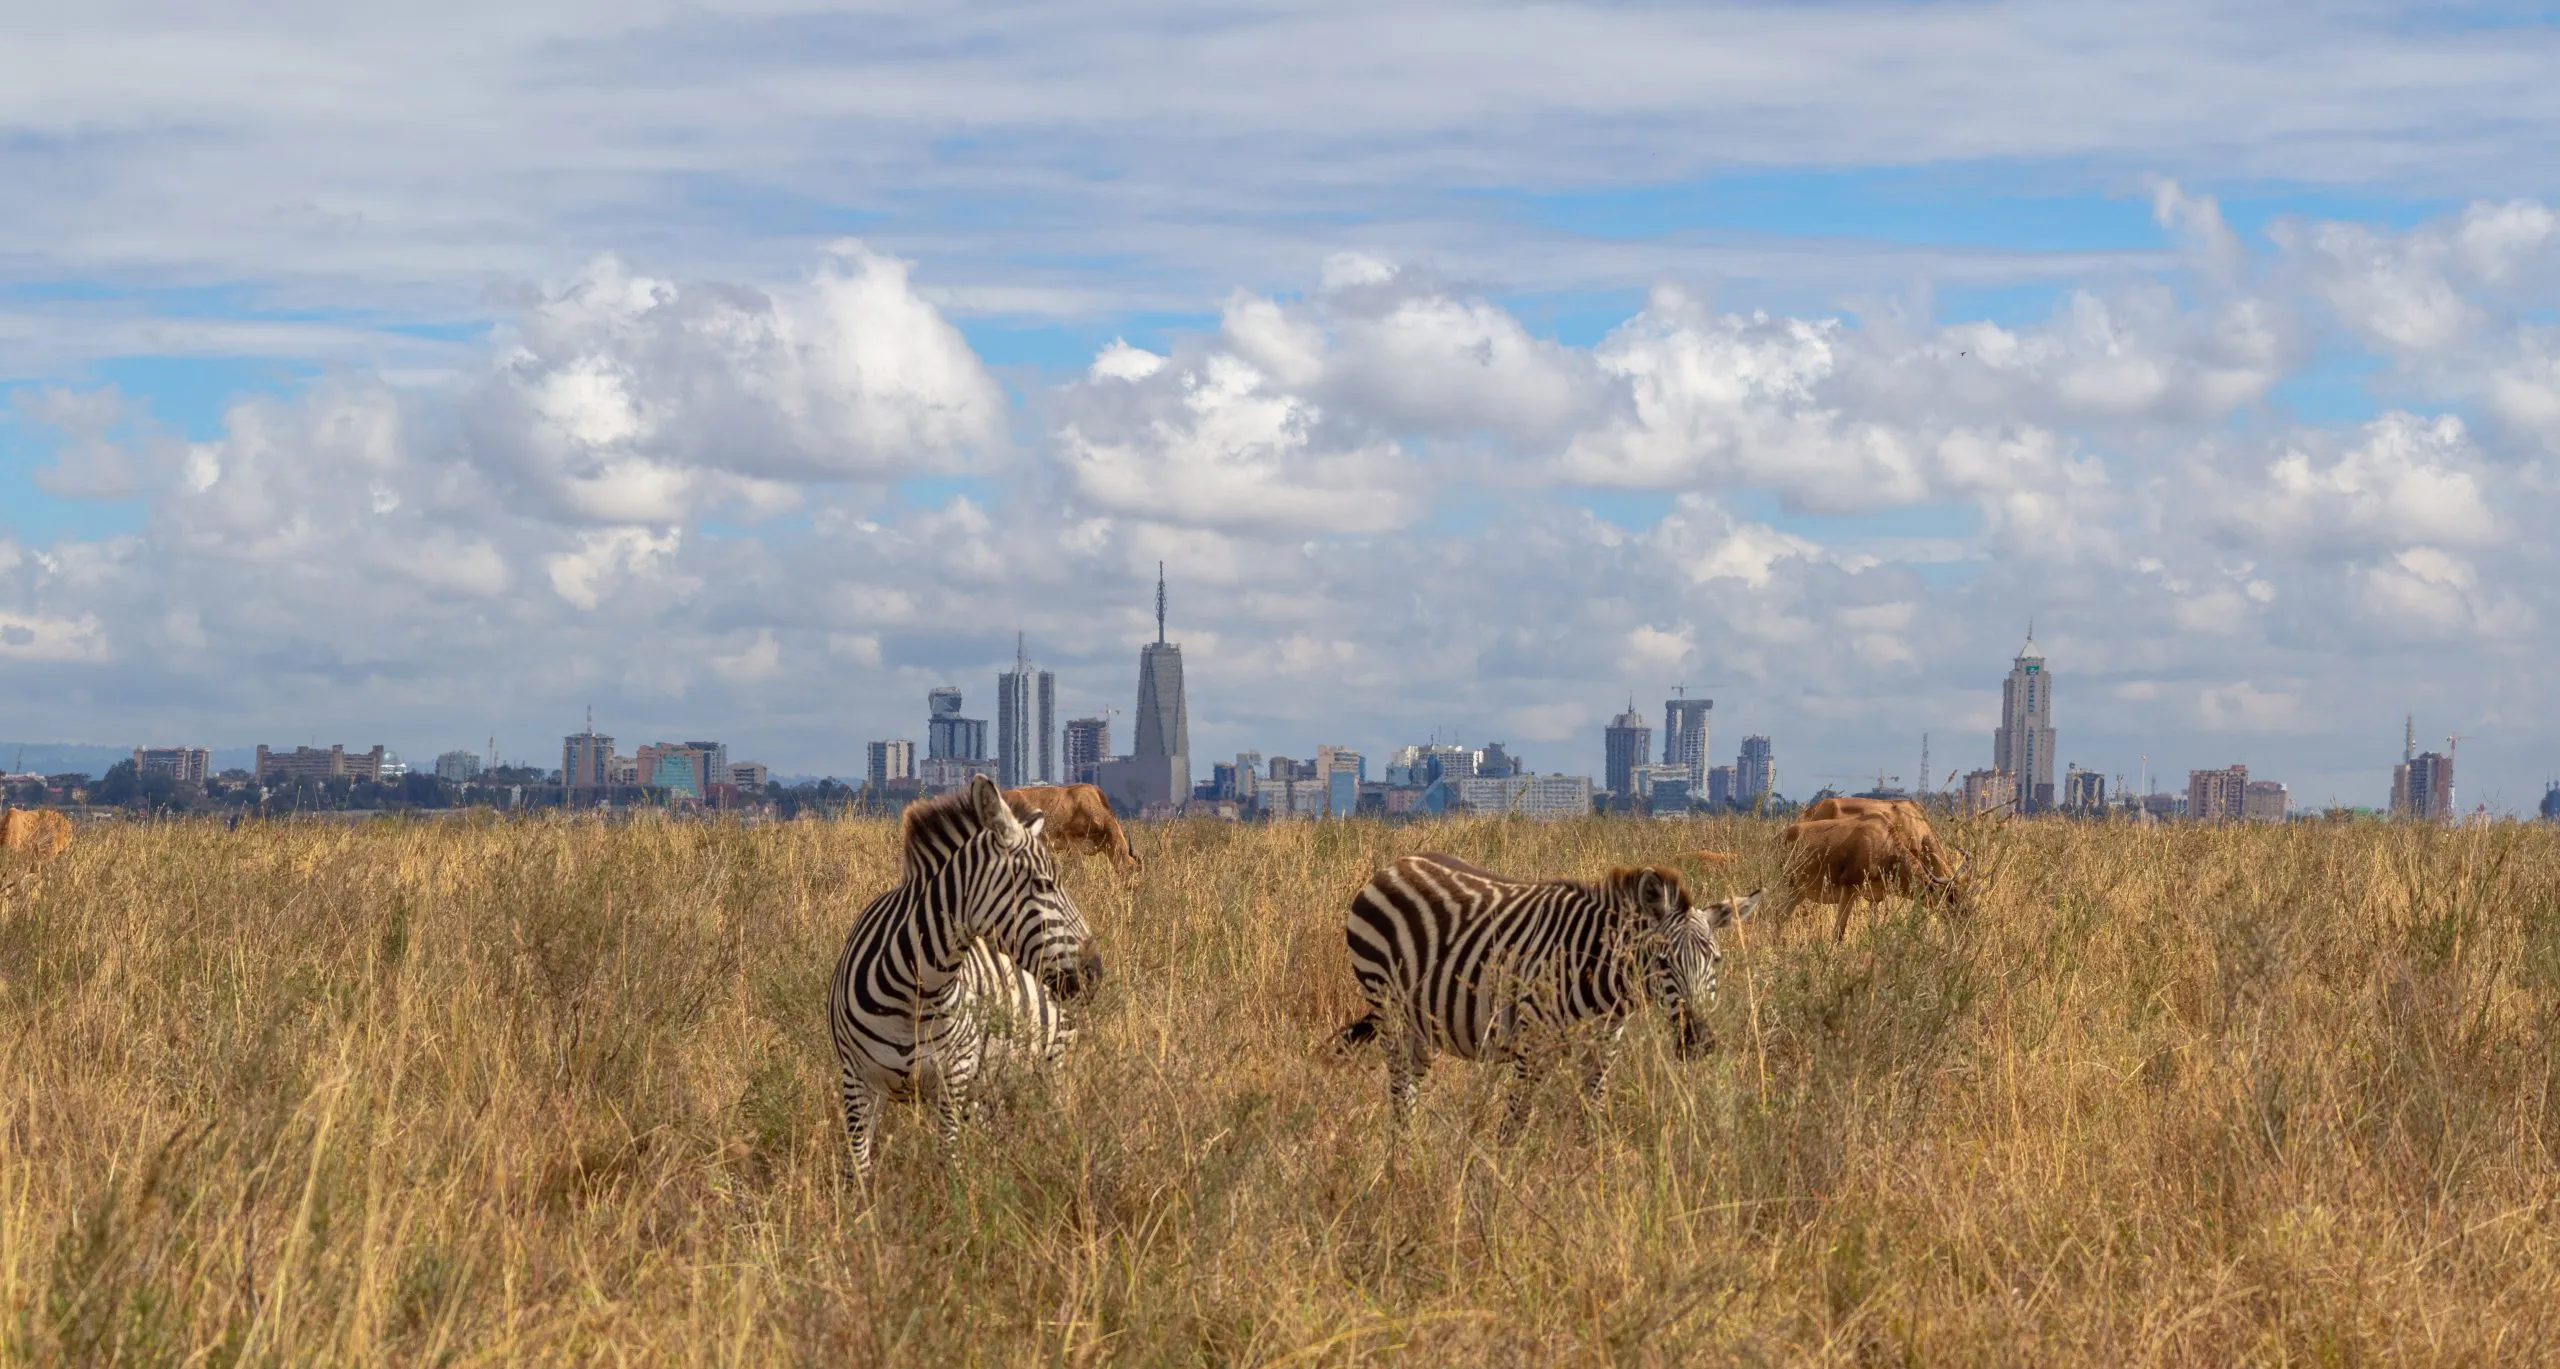 caza silvestre y el horizonte de la ciudad, los animales de la sabana comen hierba en el Parque Nacional de Nairobi, África, con el horizonte de los rascacielos de Nairobi panorama en el fondo.